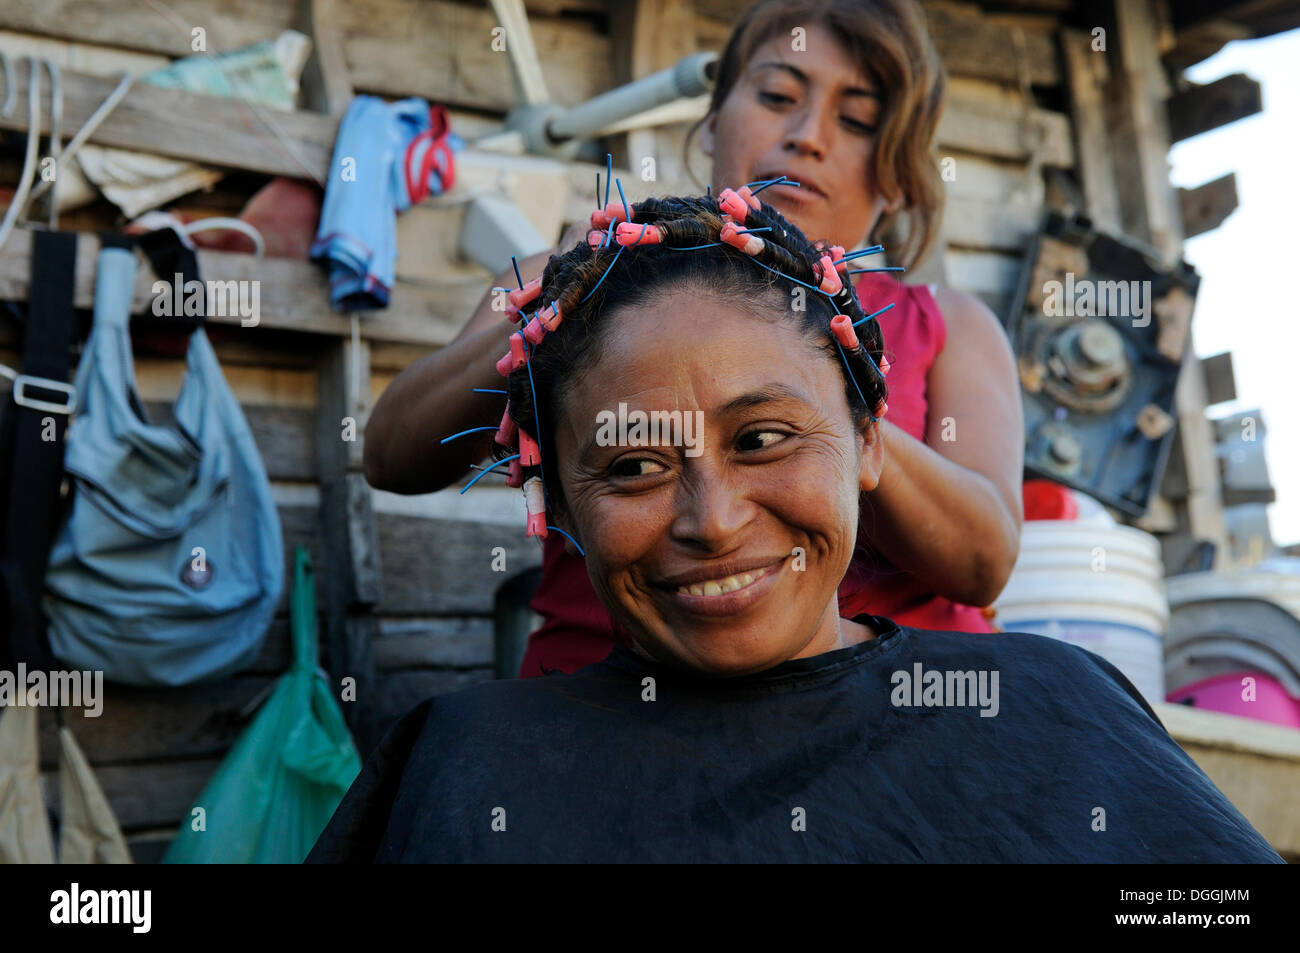 Mujer realizando otra mujer de pelo en frente de su choza, el cliente tiene 40 años, en un barrio pobre, Cancun Foto de stock